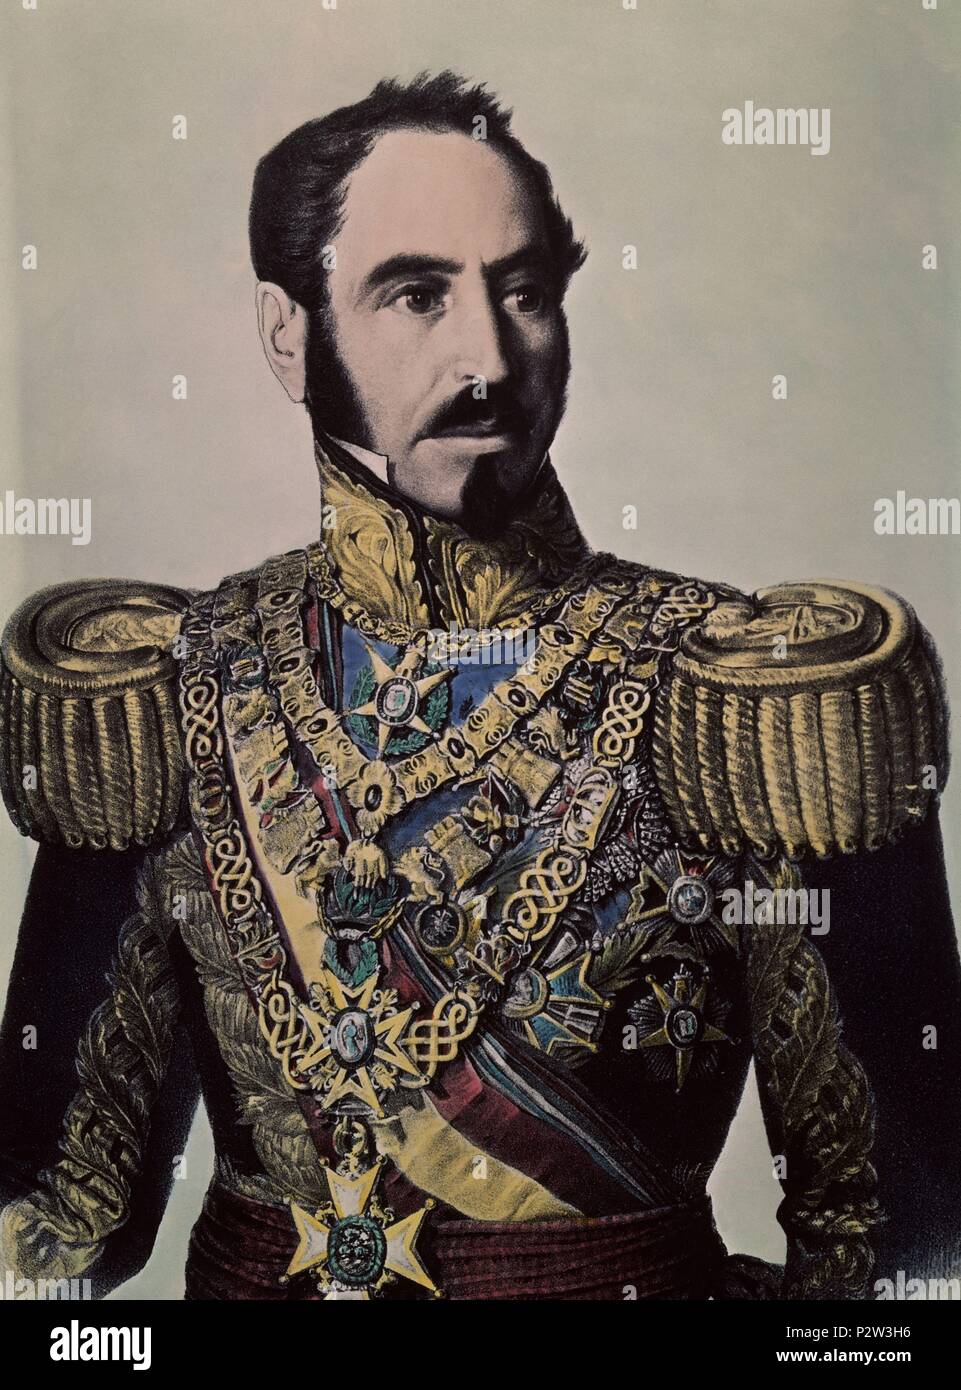 GENERAL BALDOMERO ESPARTERO DUQUE VICTORIA EN 1842. Location: MUSEO ROMANTICO-GRABADO, MADRID, SPAIN. Stock Photo